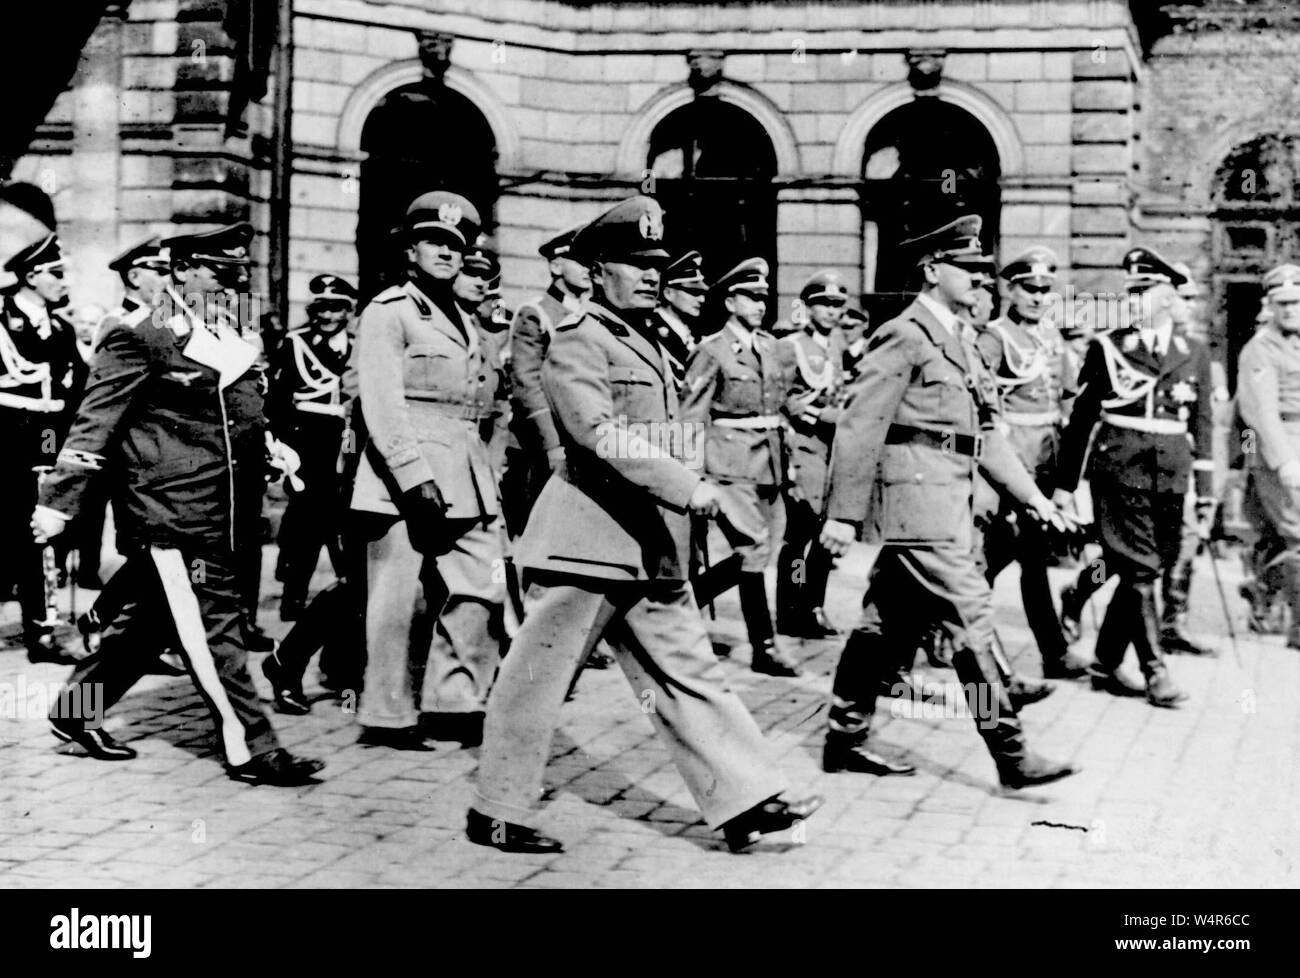 PA NEWS FOTO datata 1939 di (da sinistra) Hermann Goering, Conte Ciano, Benito Mussolini, Adolf Hitler e Heinrich Himmler (in SS uniforme). I membri di organizzazioni nazista salito più in alto nella scala sociale rispetto ai non membri durante il Terzo Reich, i ricercatori hanno detto. Foto Stock